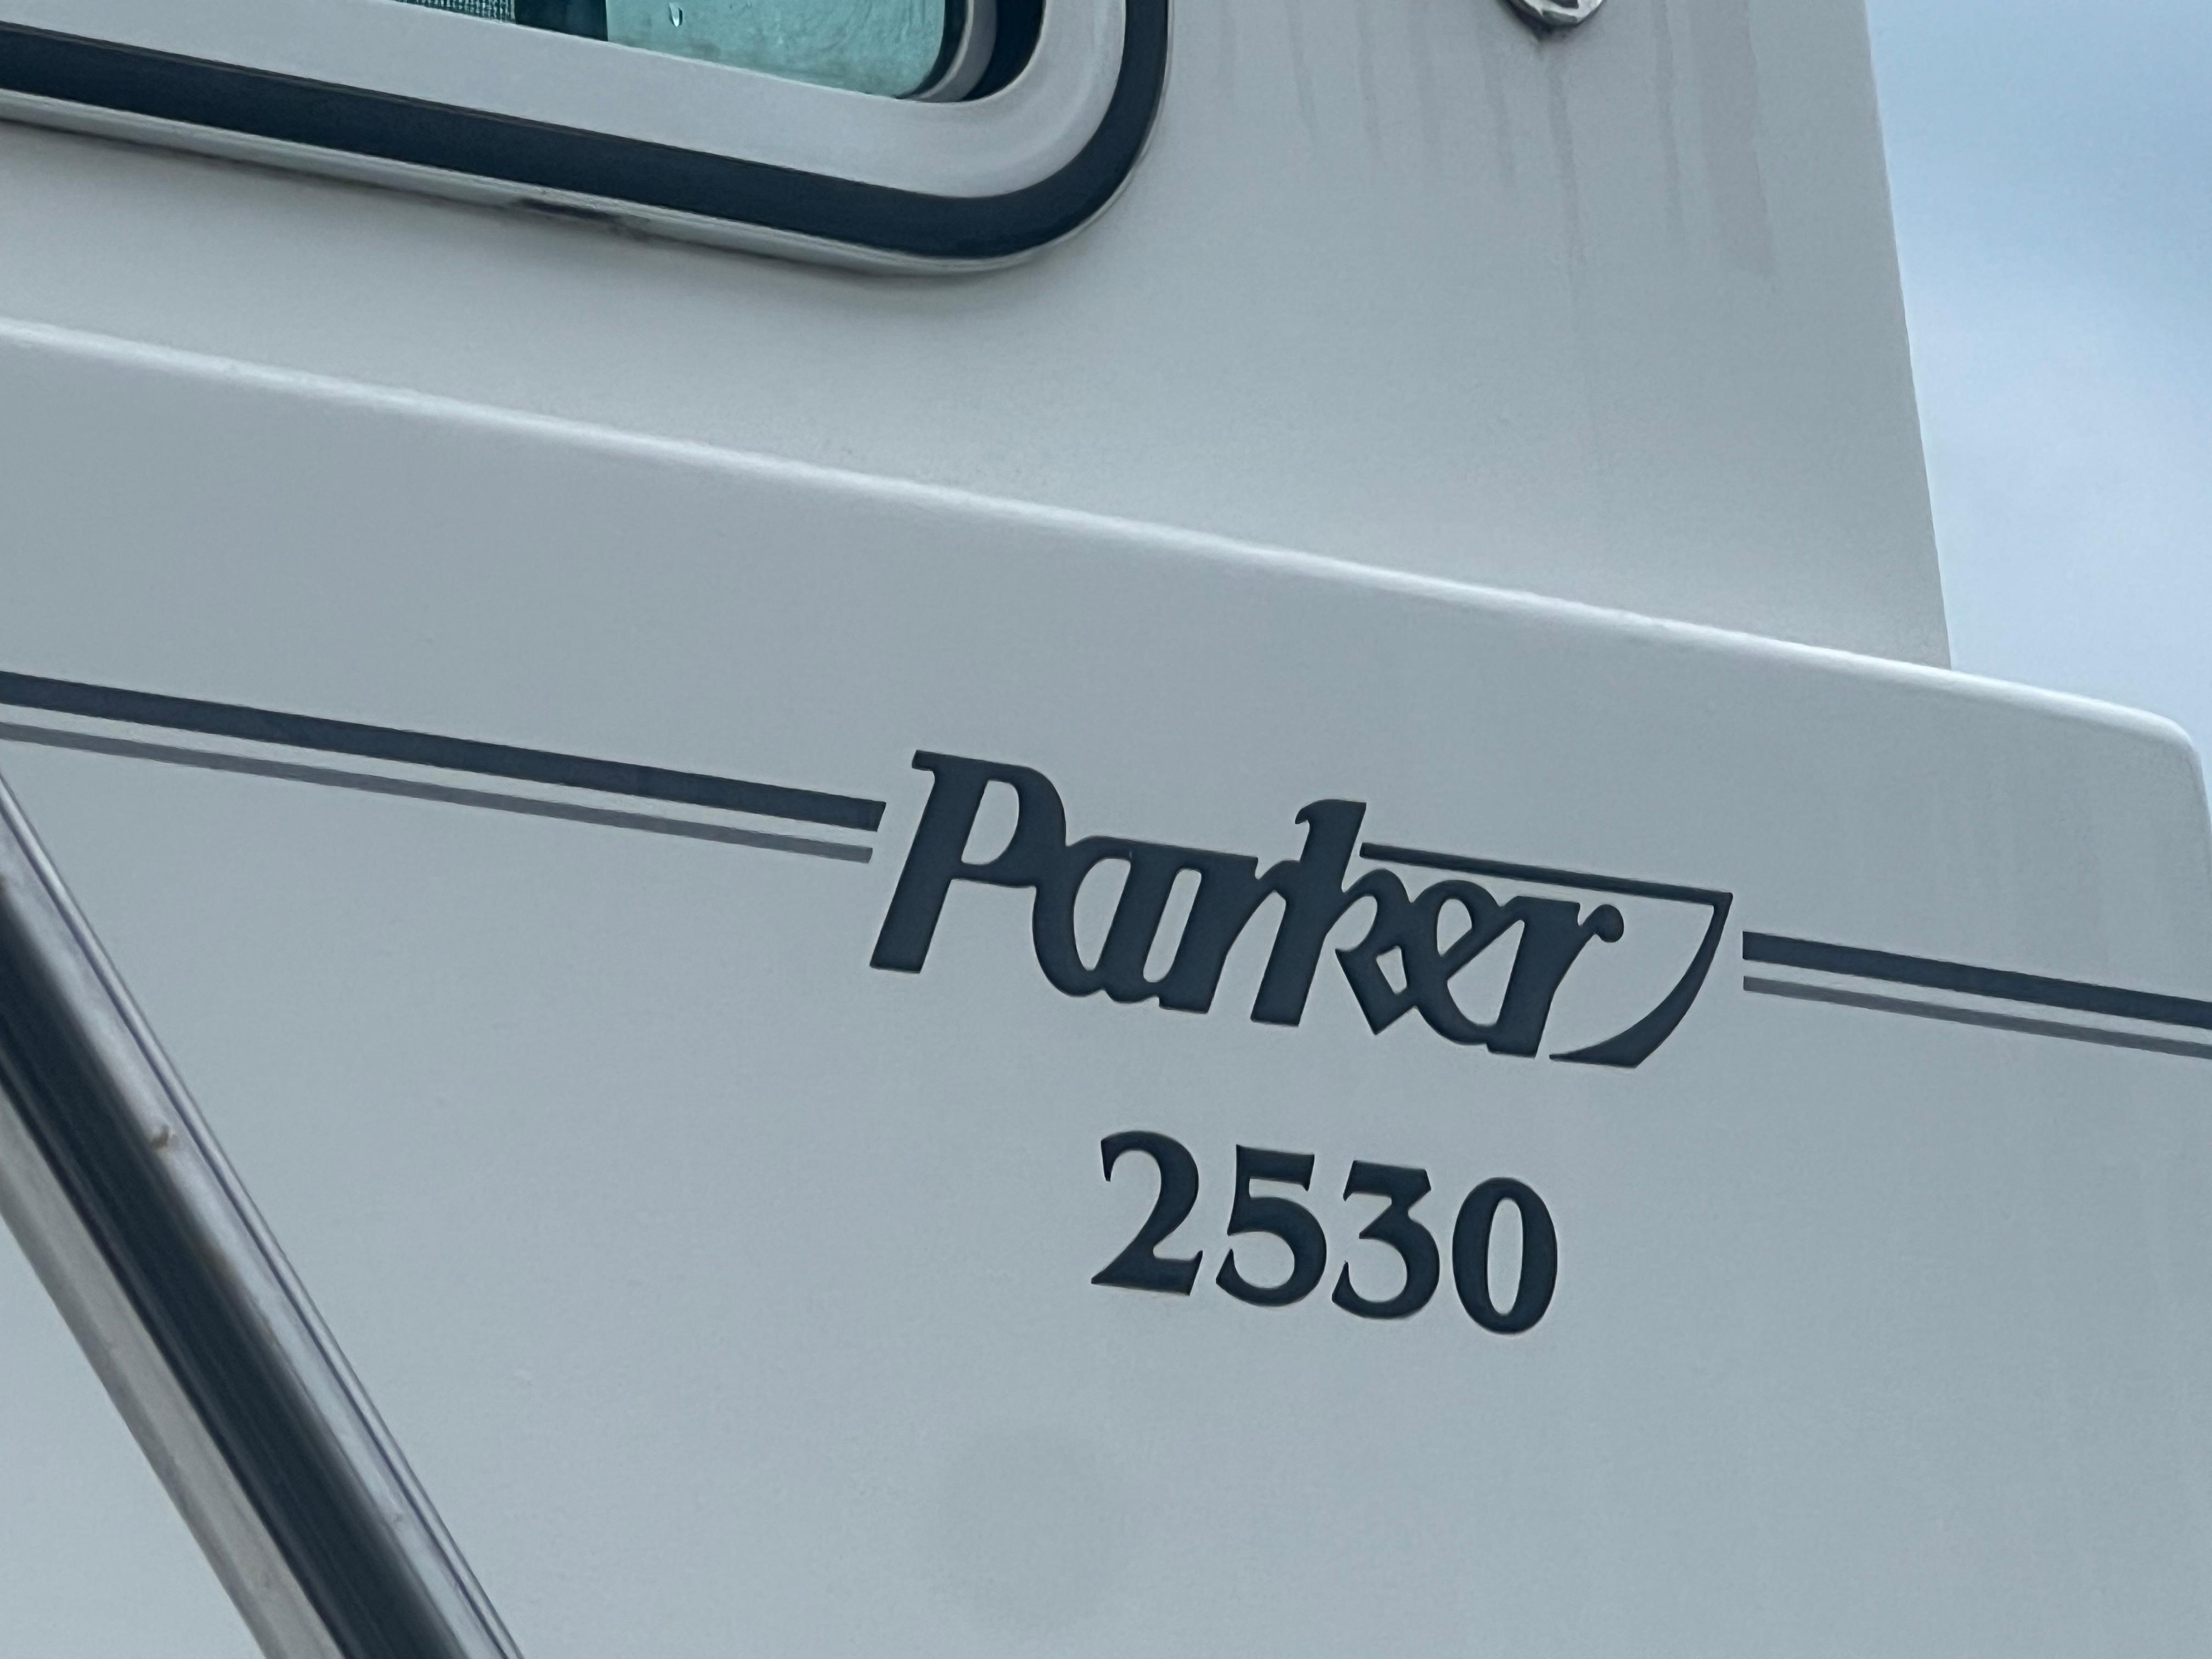 2016 Parker 2530 Extended Cabin